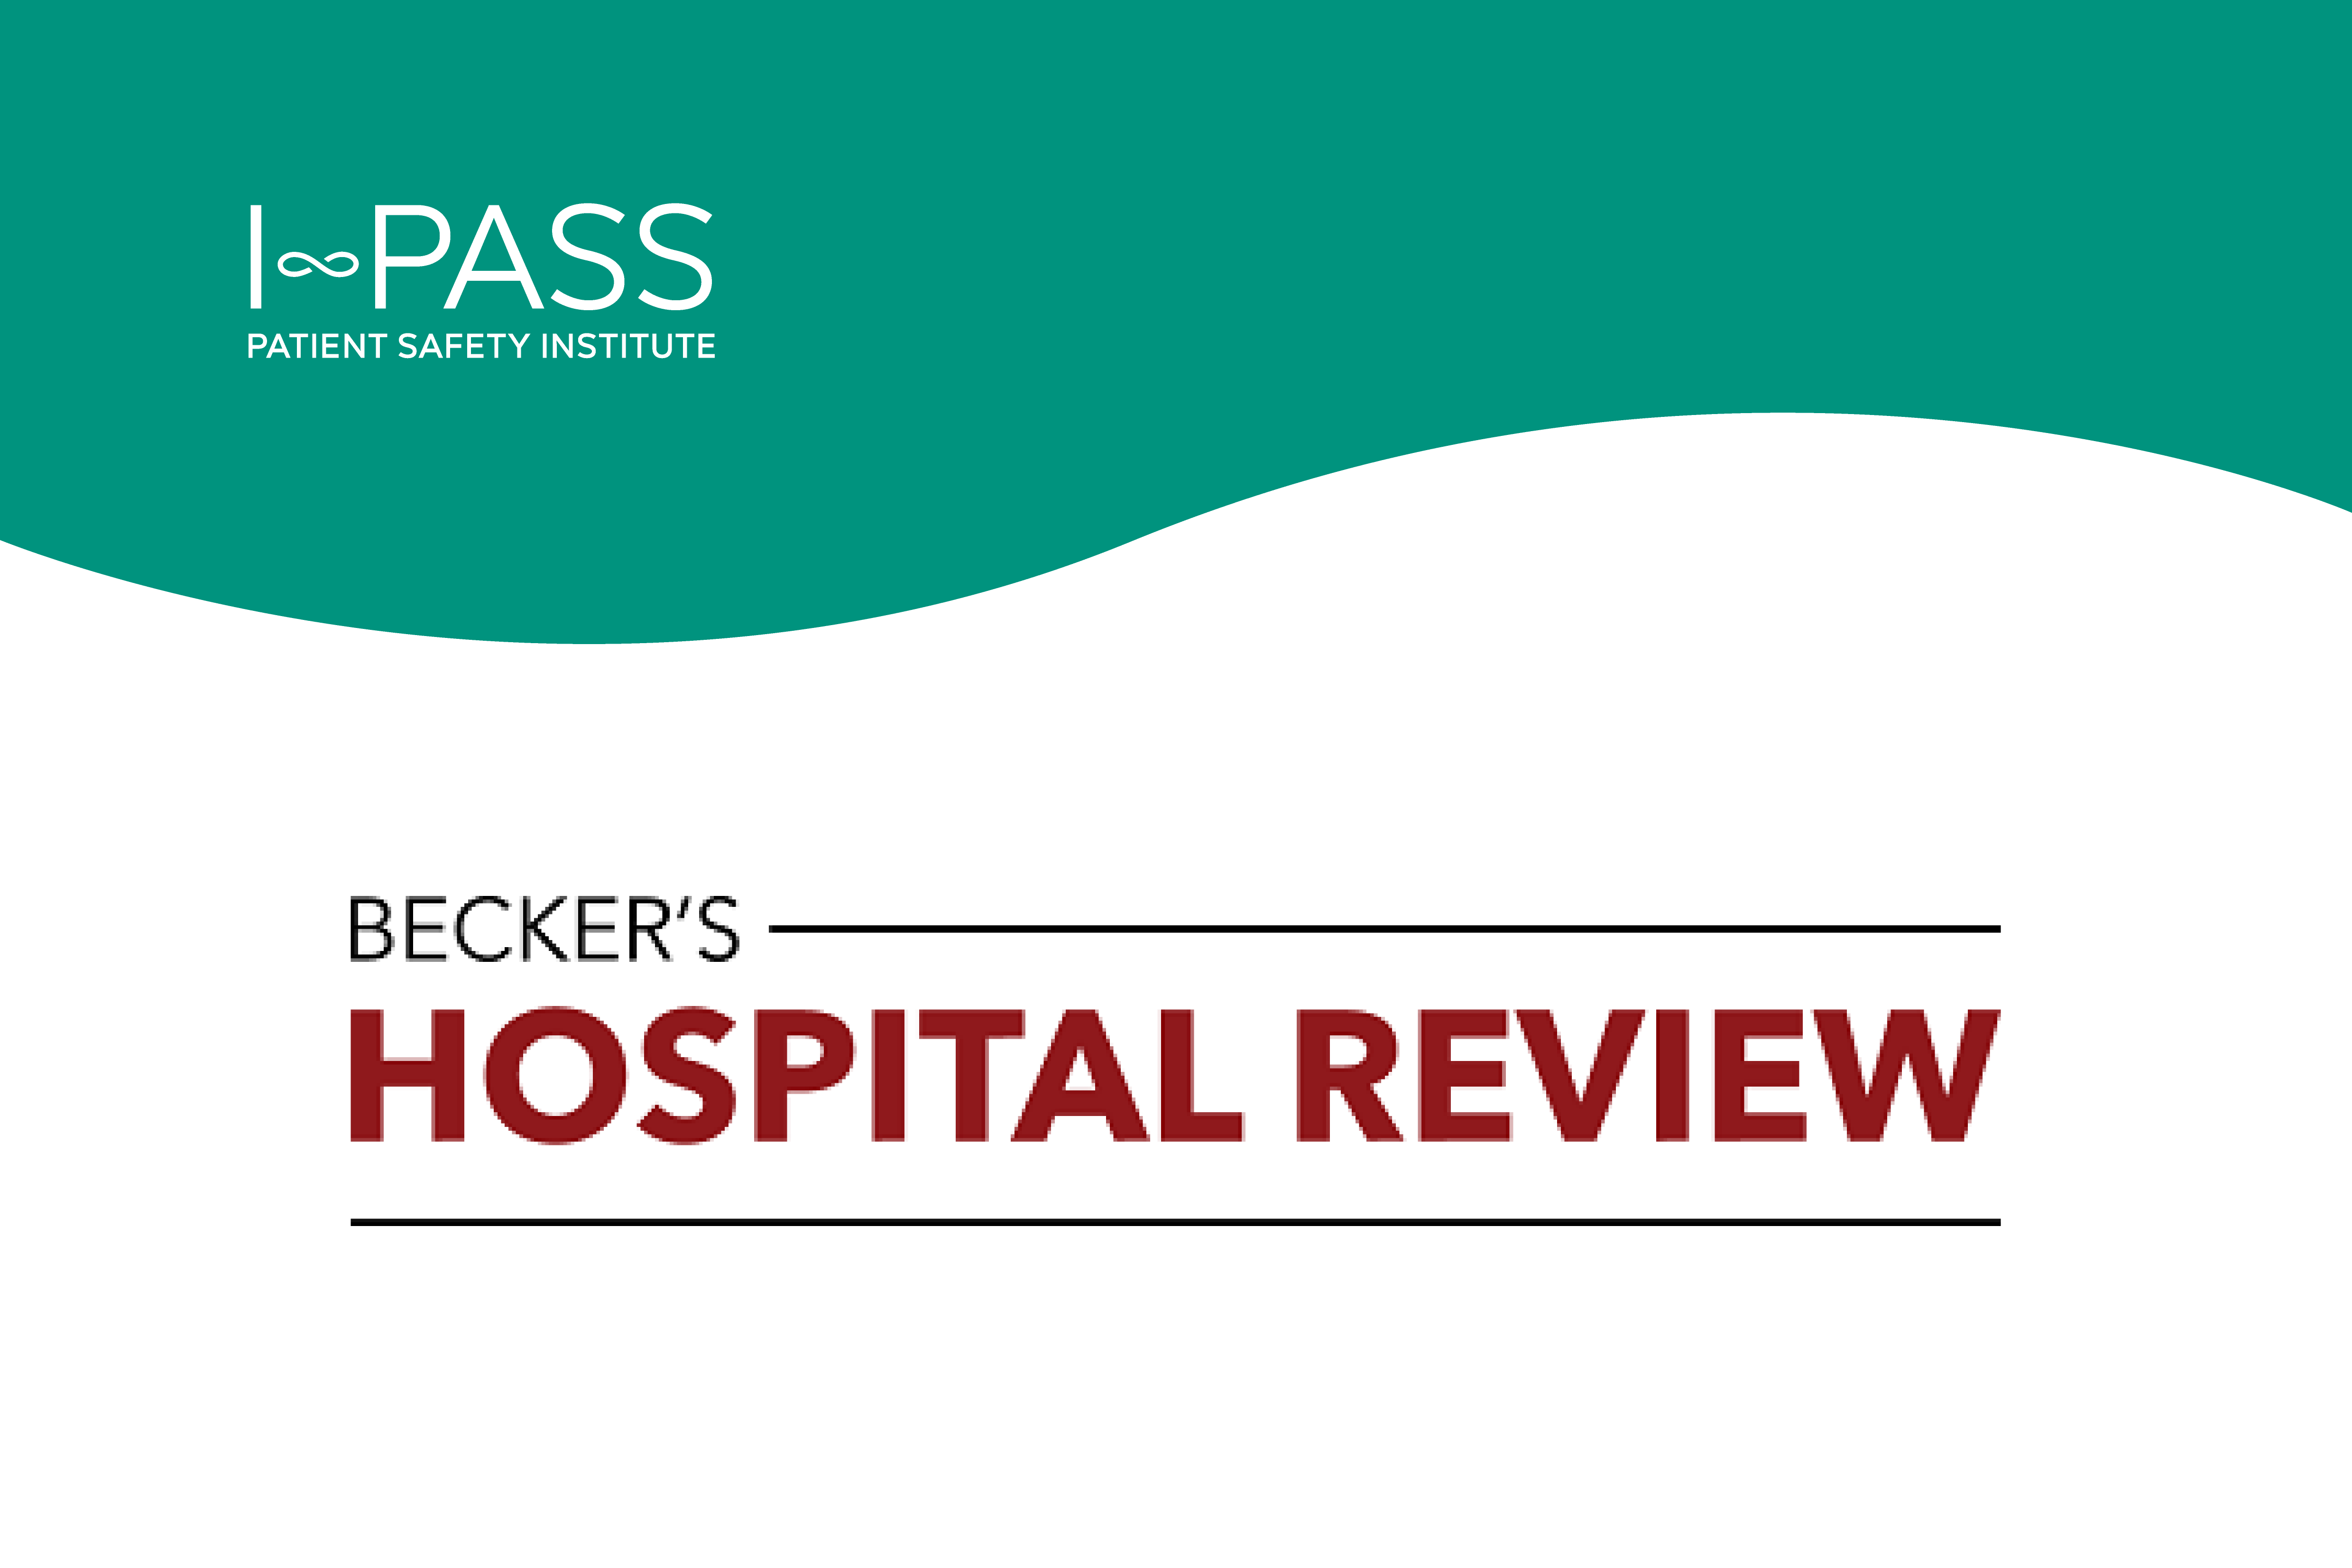 Becker’s Hospital Review: Kentucky Hospital Association aims to improve clinical handoffs